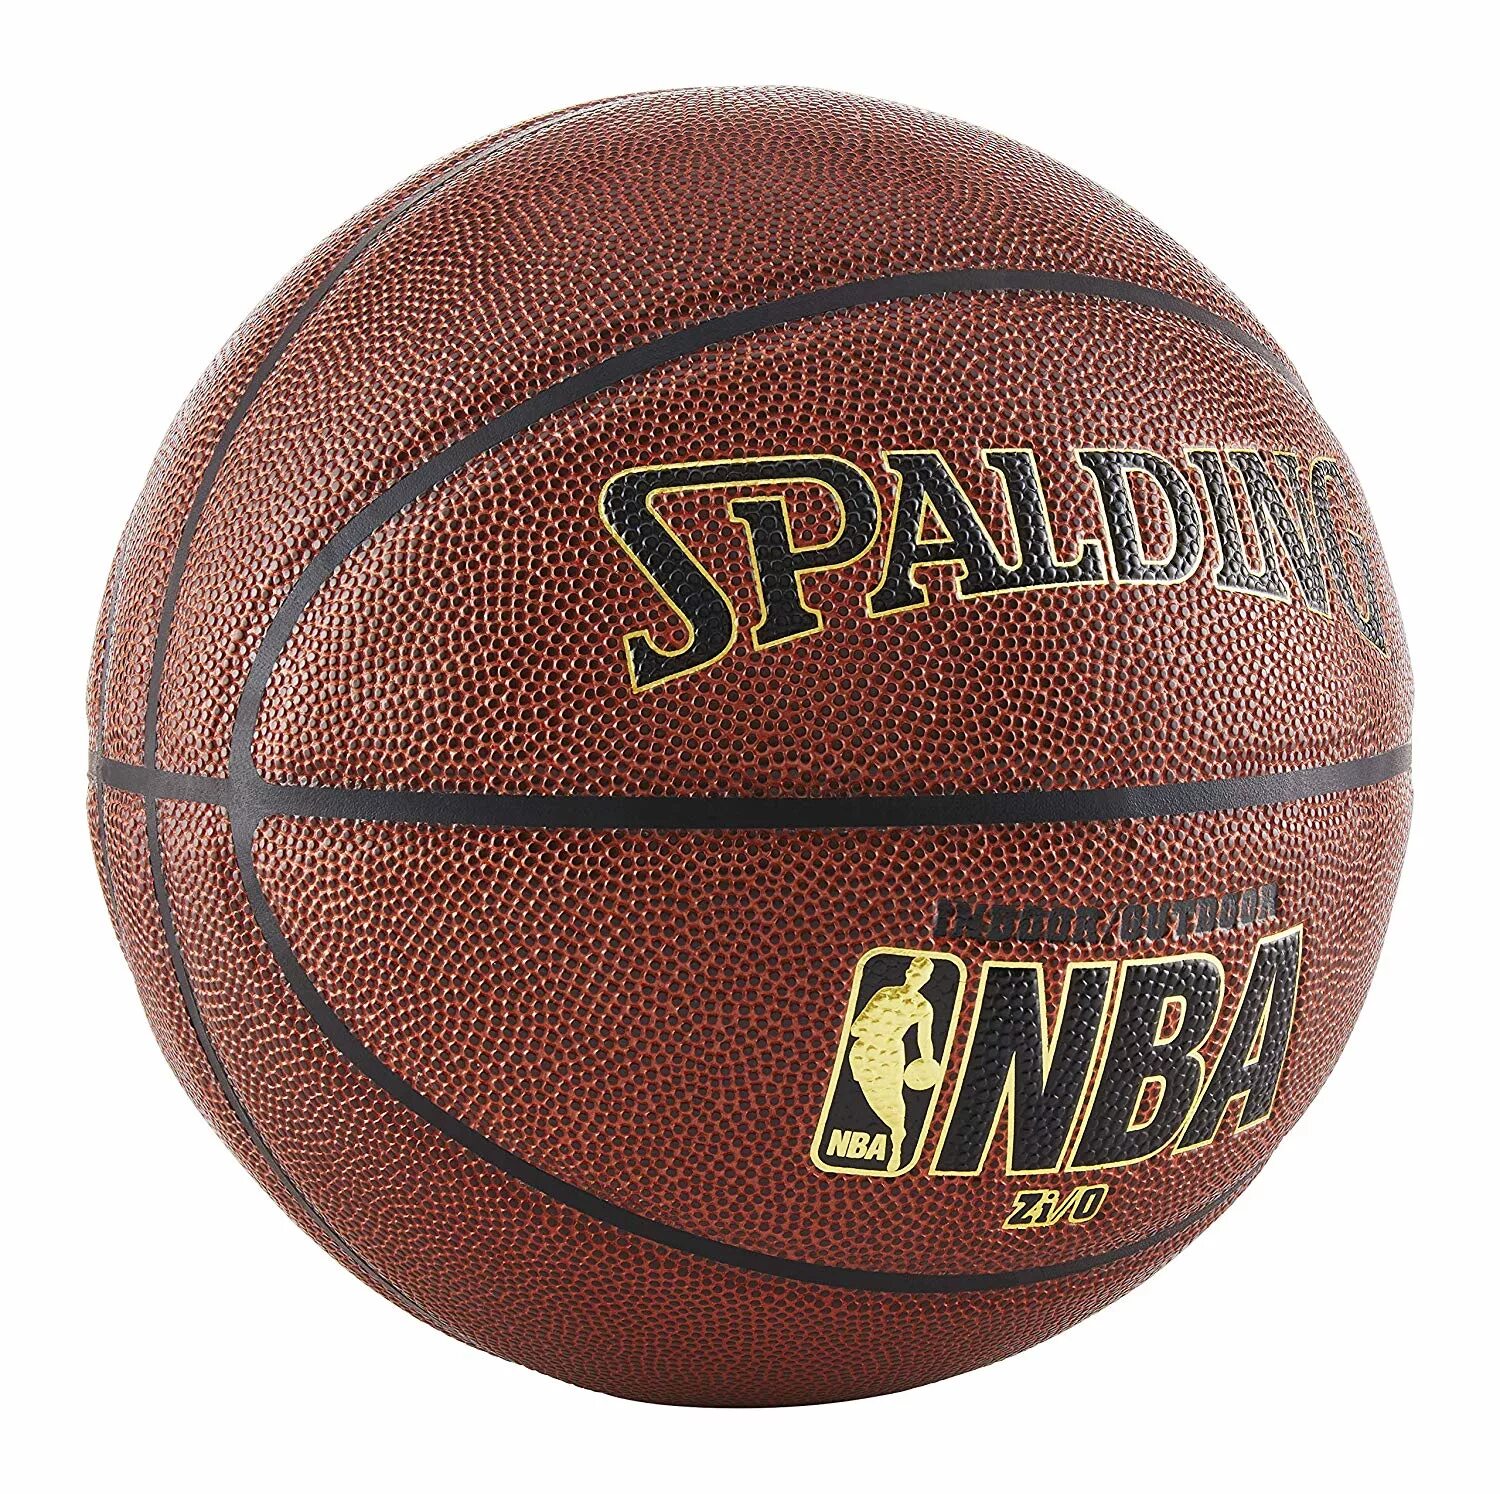 Спортивные магазины баскетбольные мячи. Баскетбольный мяч Spalding NBA. Баскетбольный мяч Спалдинг НБА. Мяч баскетбольный Spalding Grip Control. Мячи баскетбол 5 Spalding.